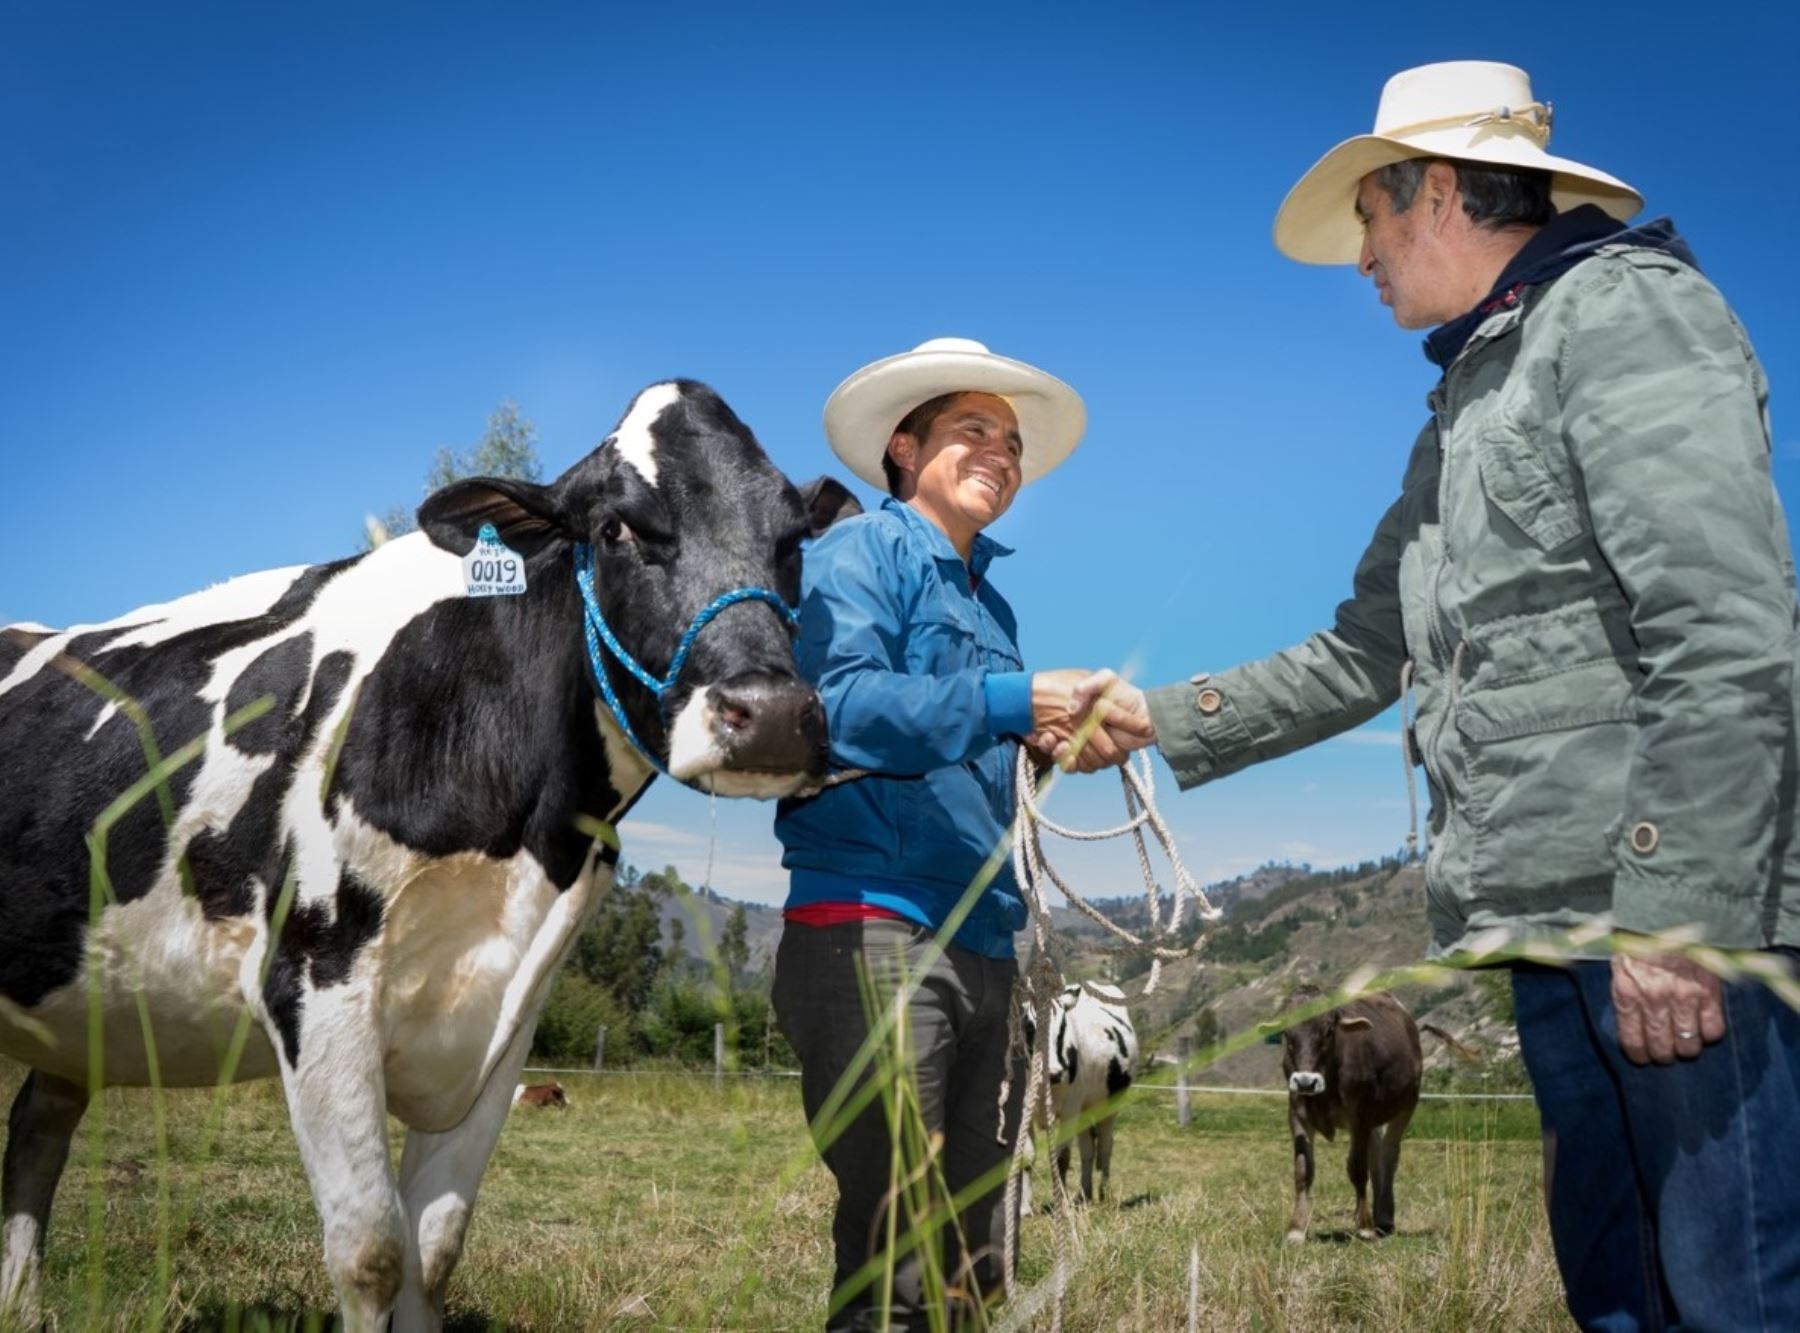 Cerca de 4,400 familias productoras de Cajamarca se benefician con el proyecto "Ganaderos de altura" que impulsa la mejora de la producción láctea y nuevos emprendimientos. ANDINA/Difusión